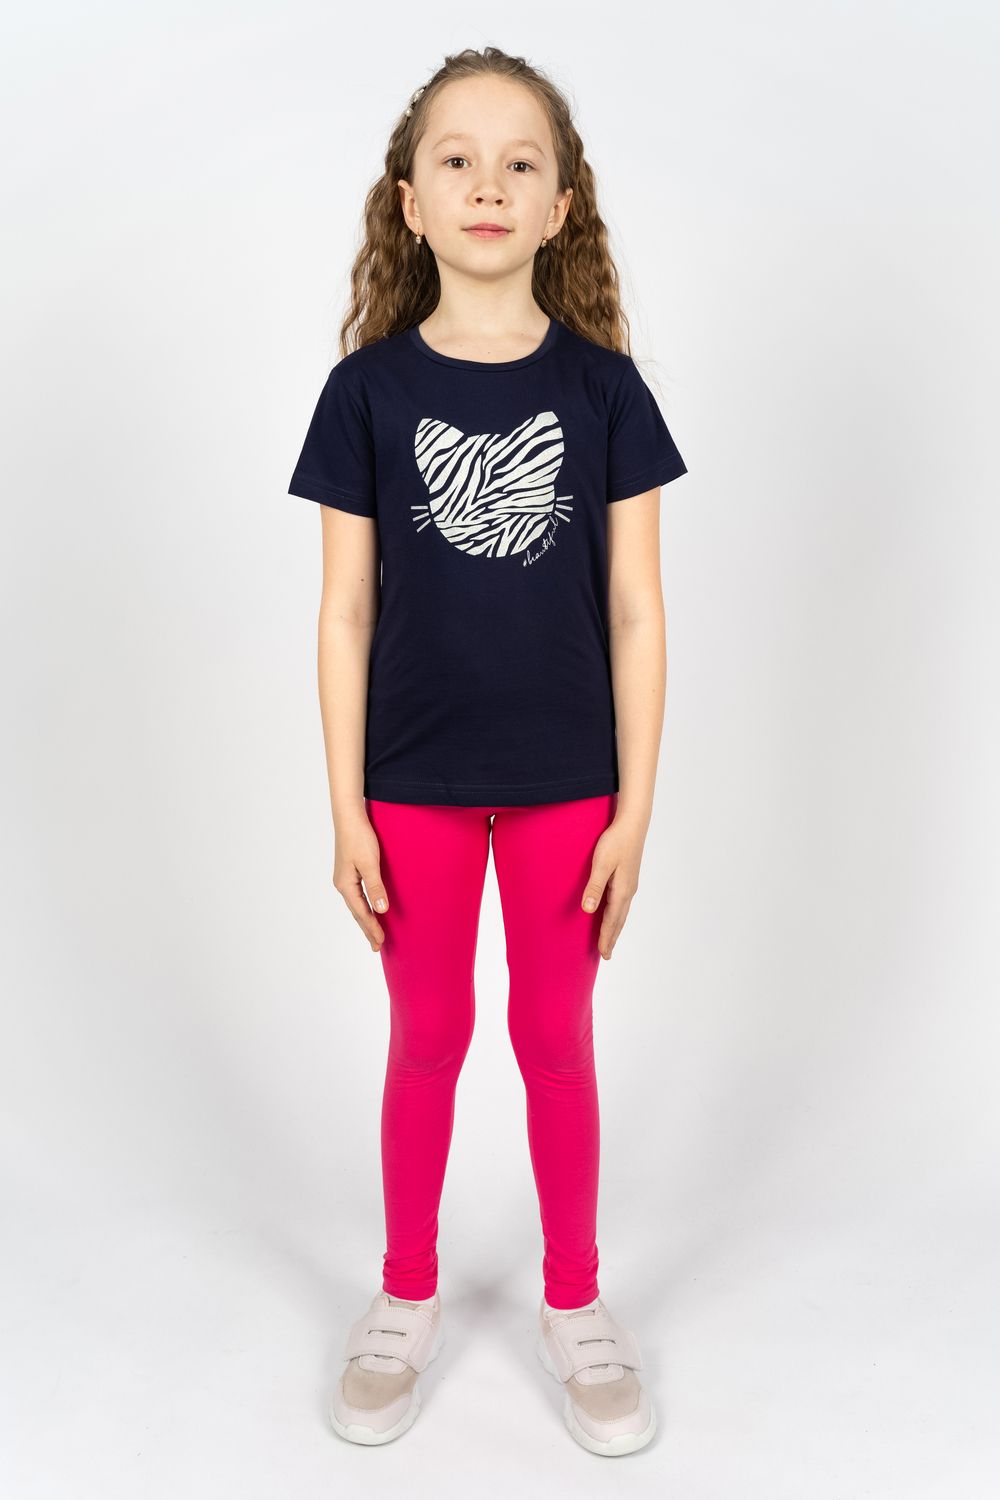 Комплект для девочки 41110 (футболка +лосины) - т.синий/розовый